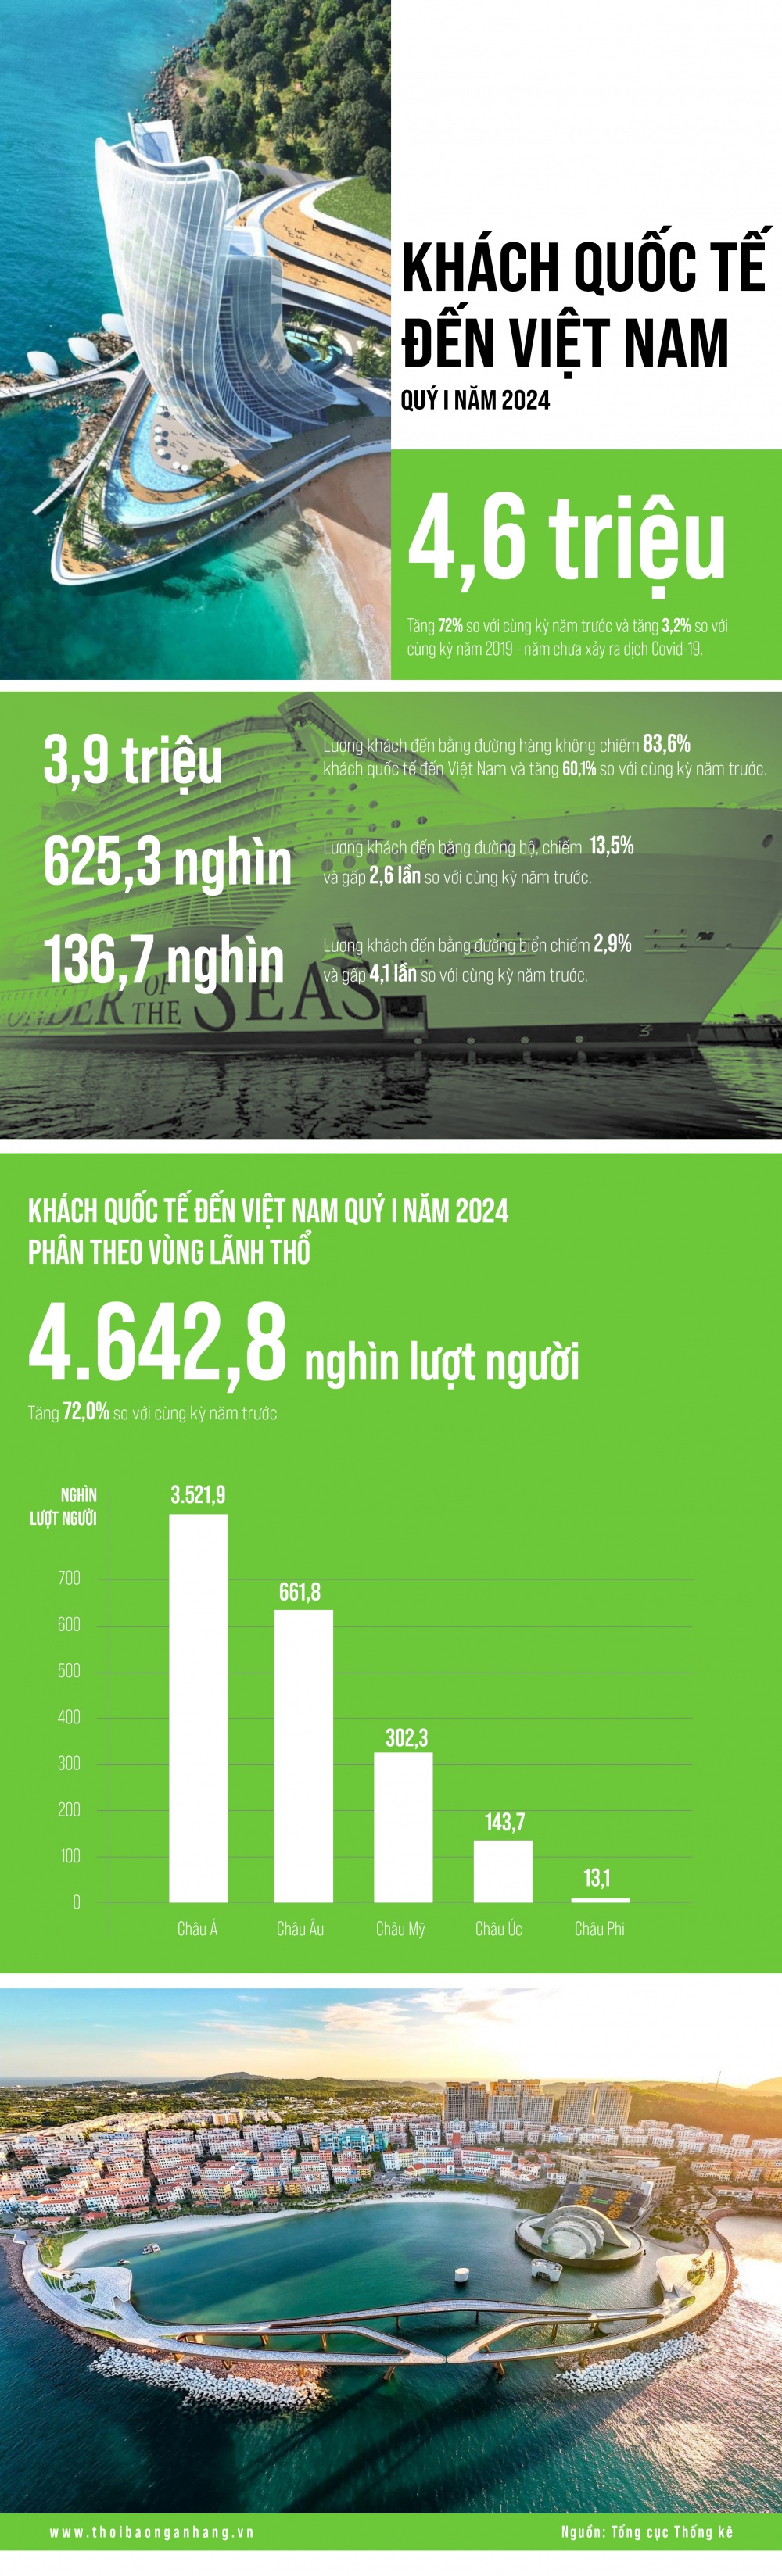 [Infographic] Khách quốc tế đến Việt Nam Quý I năm 2024